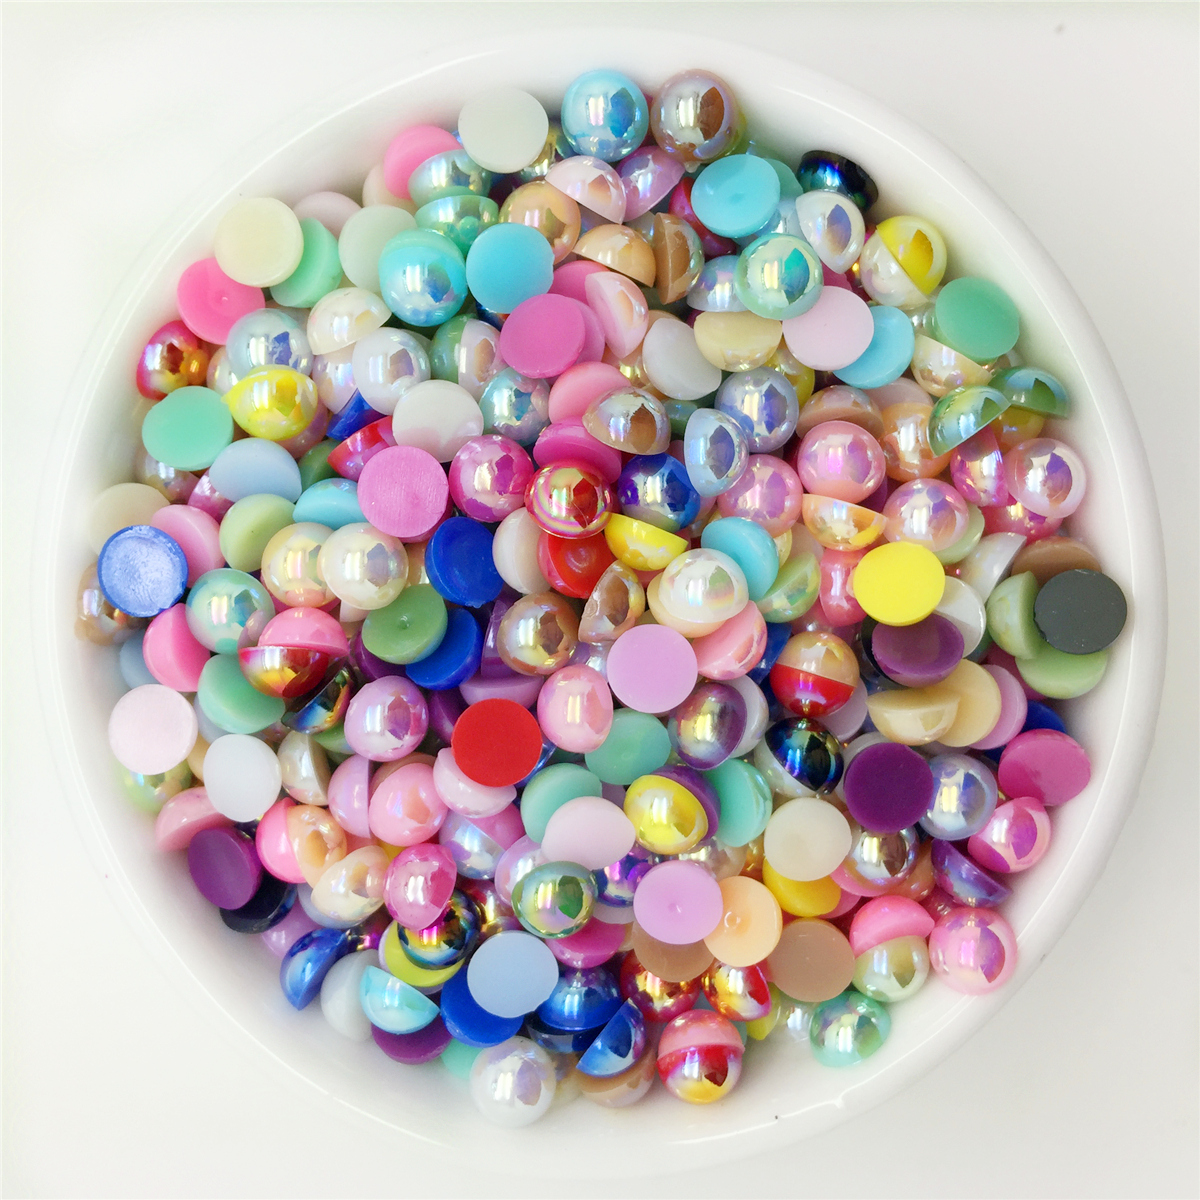 Perlas de espalda plana para manualidades, 1.76 oz mixtas de color rosa,  morado y blanco medias perlas para manualidades, tamaño mixto de